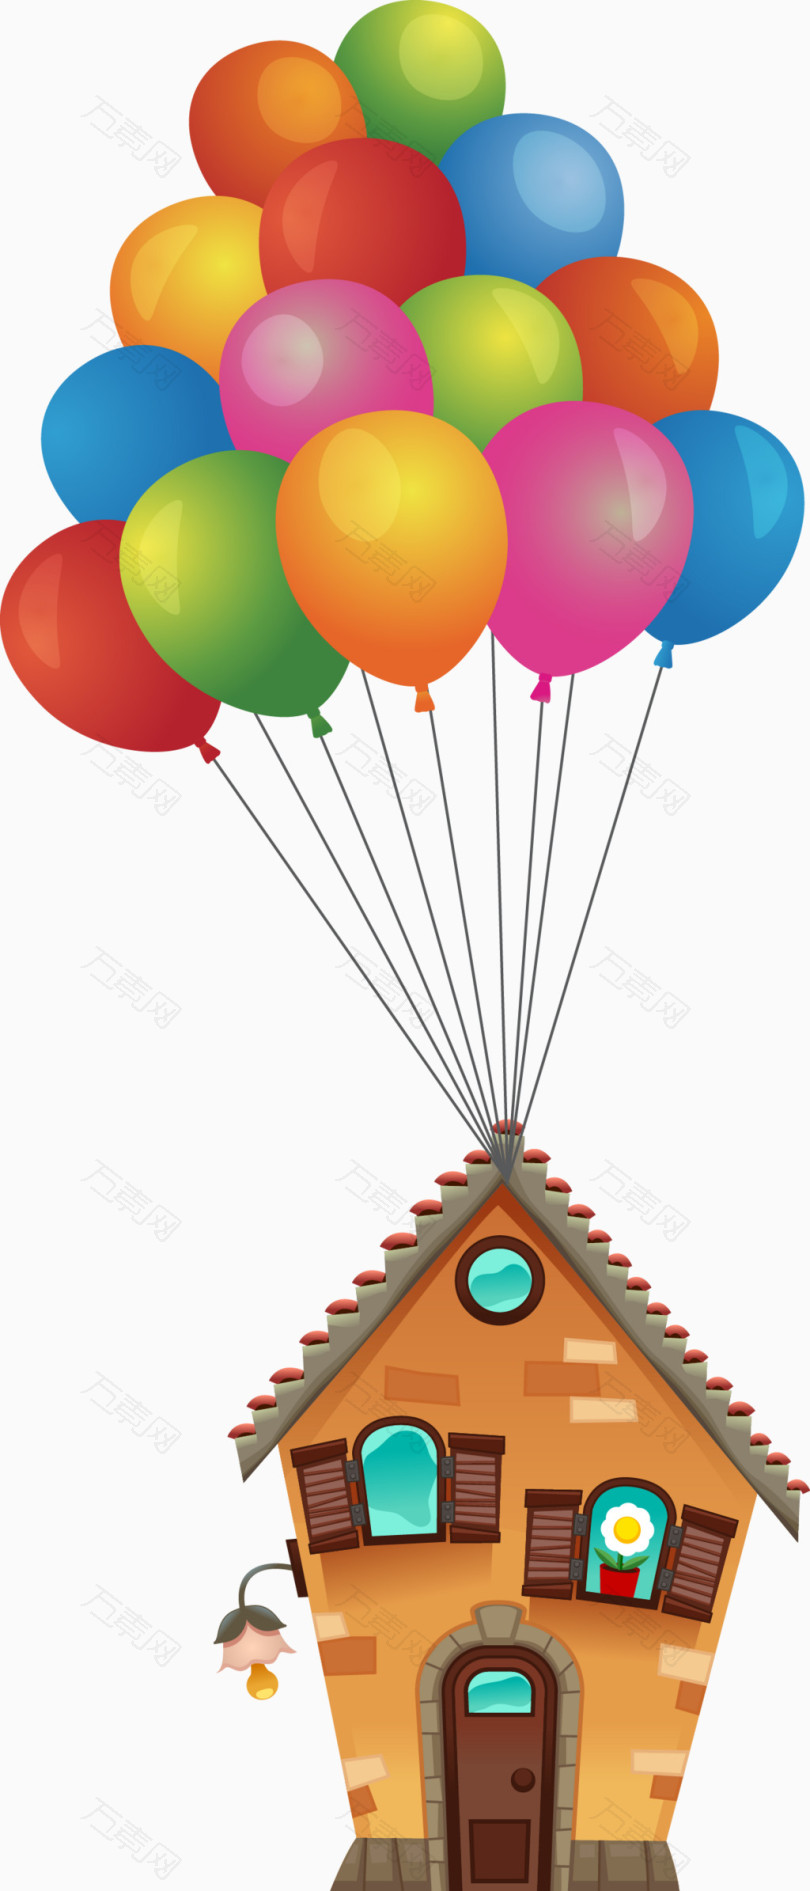 可爱炫彩气球飞屋矢量图